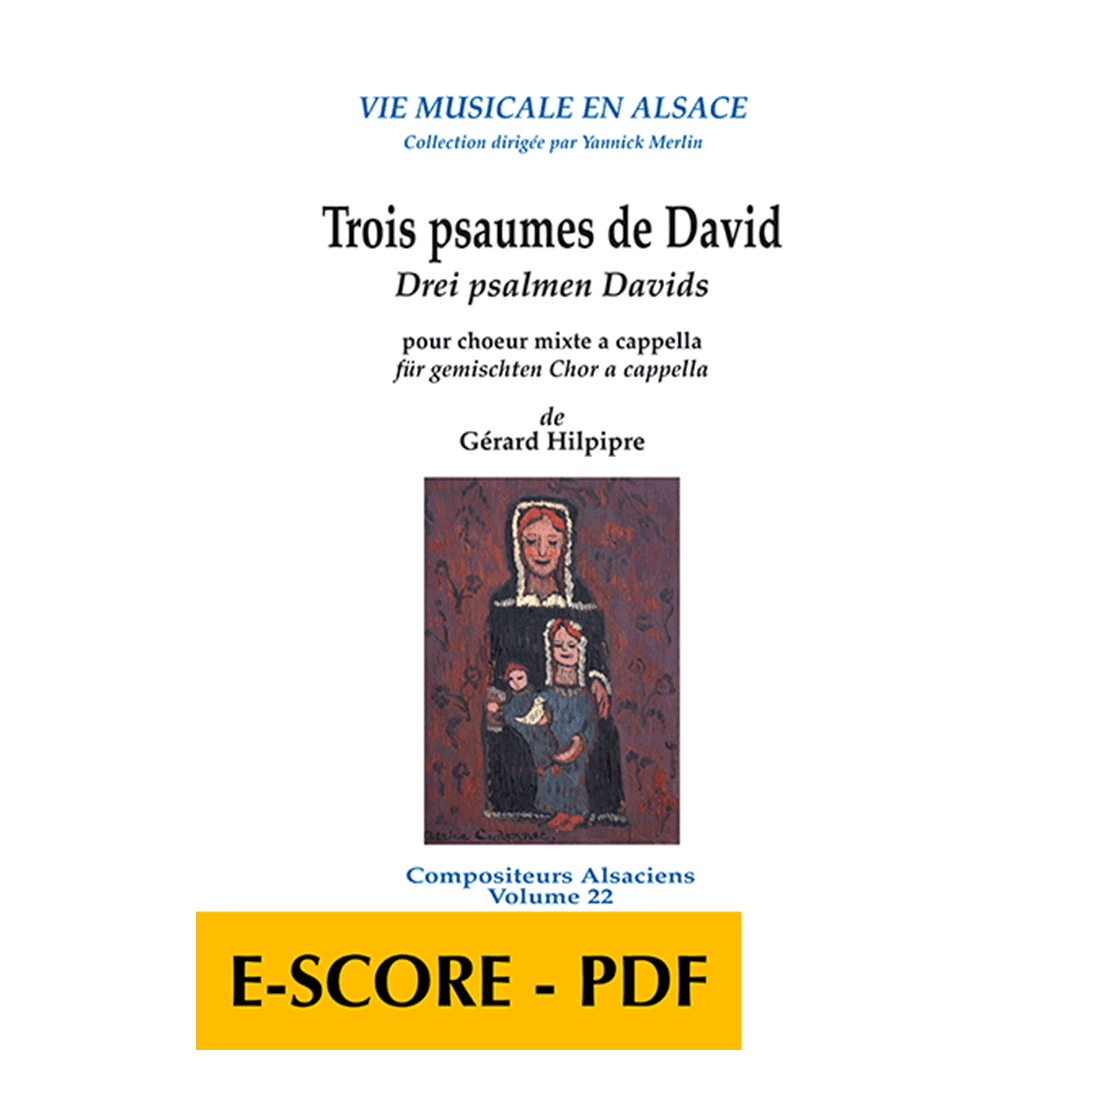 Trois psaumes de David pour choeur mixte a cappella  - E-score PDF